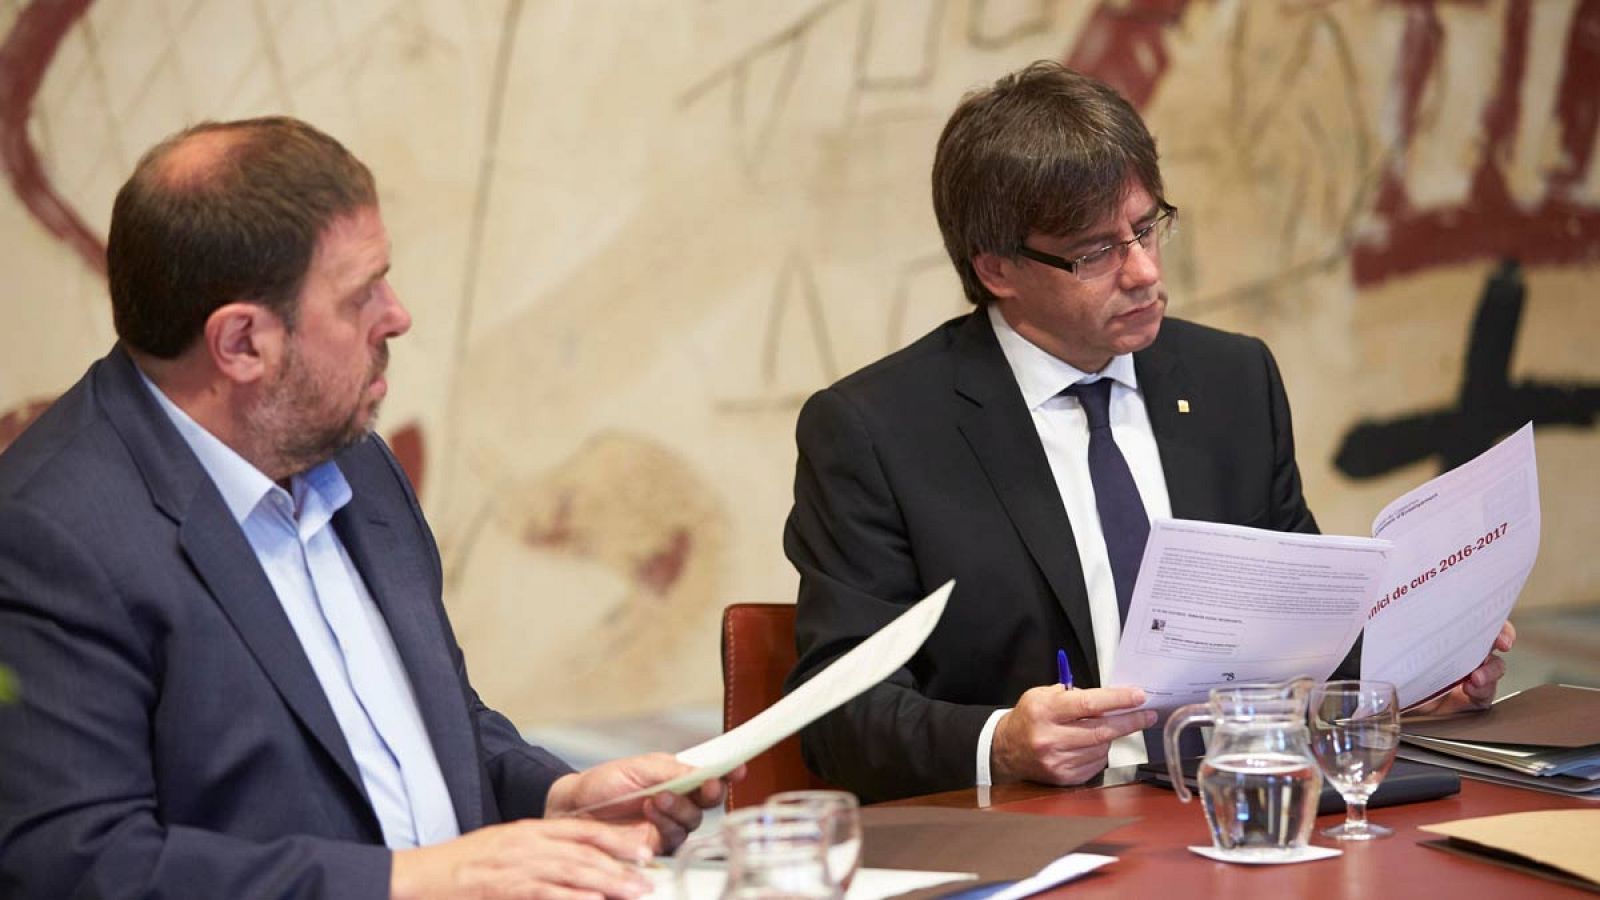 Reunión de trabajo del presidente y vicepresidente de la Generalitat, Carles Puigdemont y Oriol Junqueras.